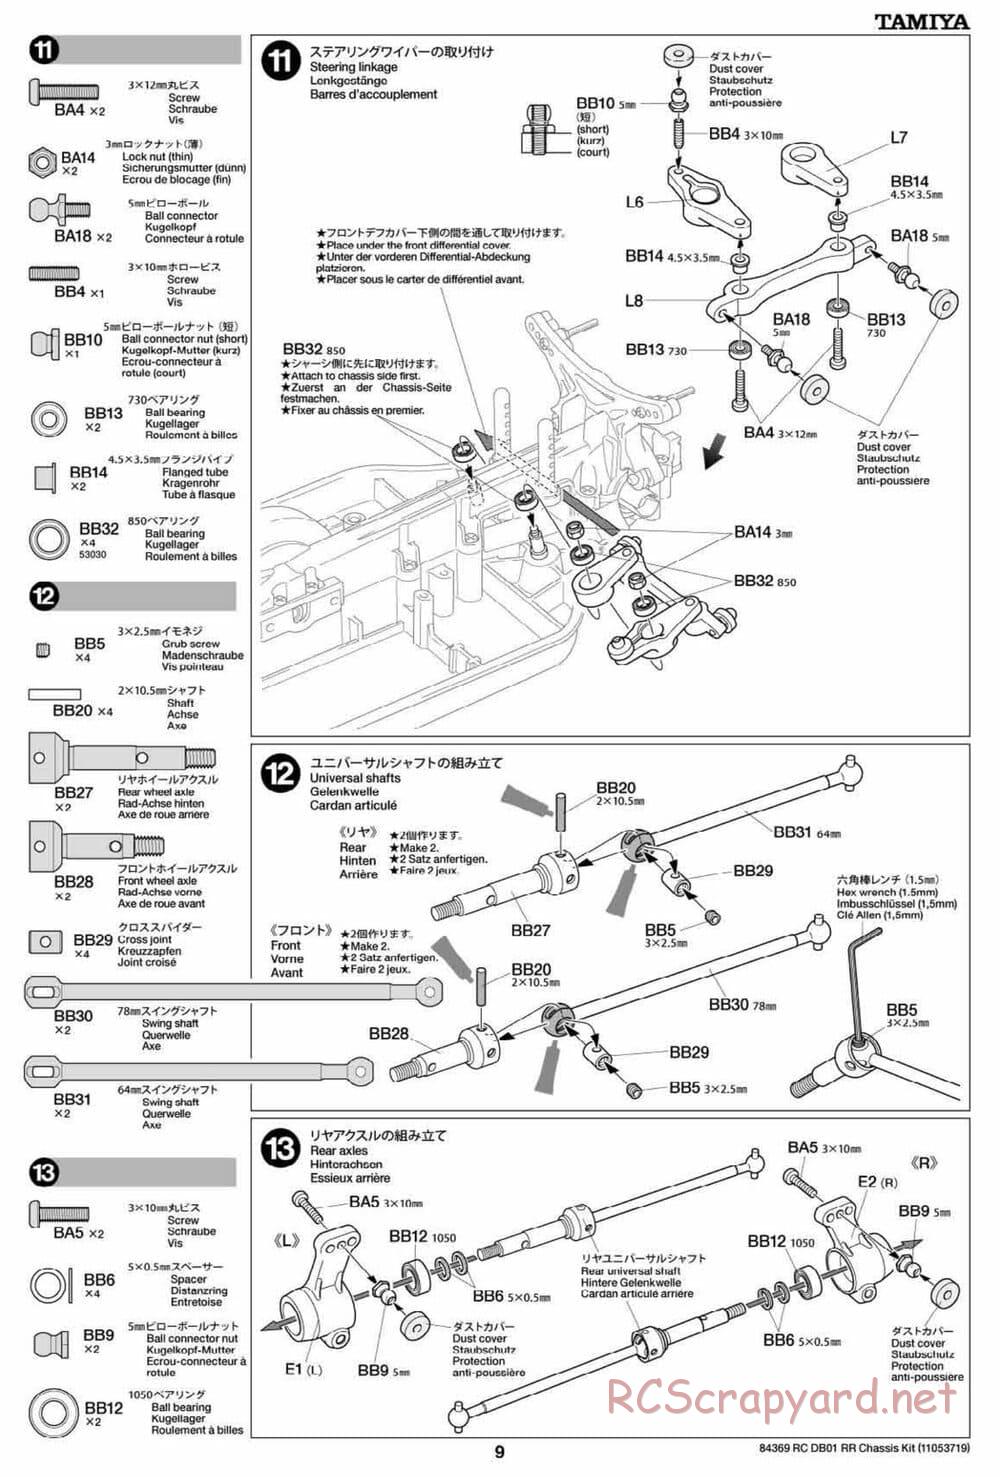 Tamiya - DB-01 RR Chassis - Manual - Page 9